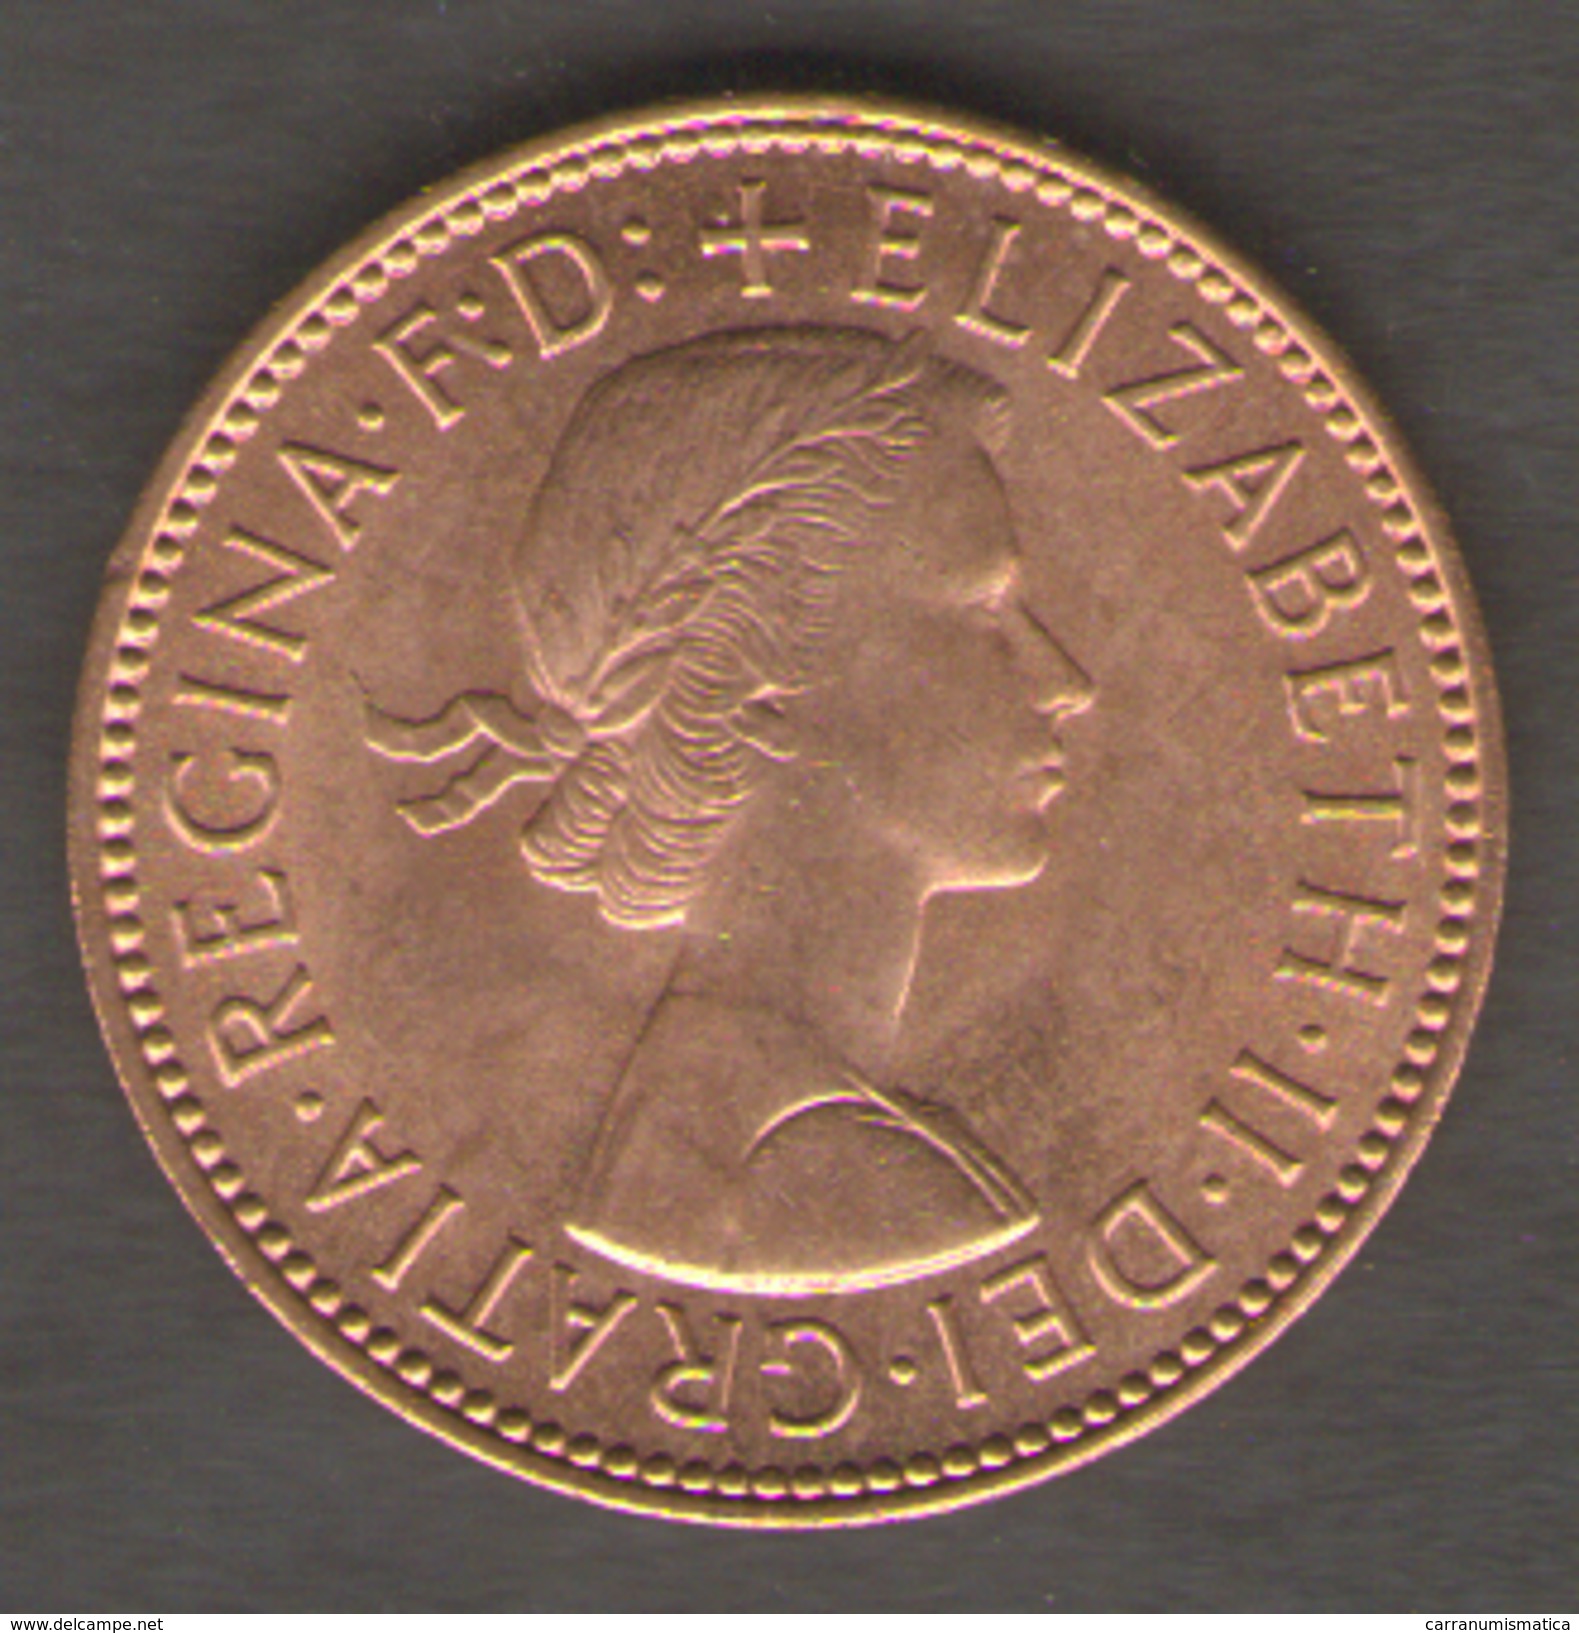 GRAN BRETAGNA HALF PENNY 1967 - C. 1/2 Penny